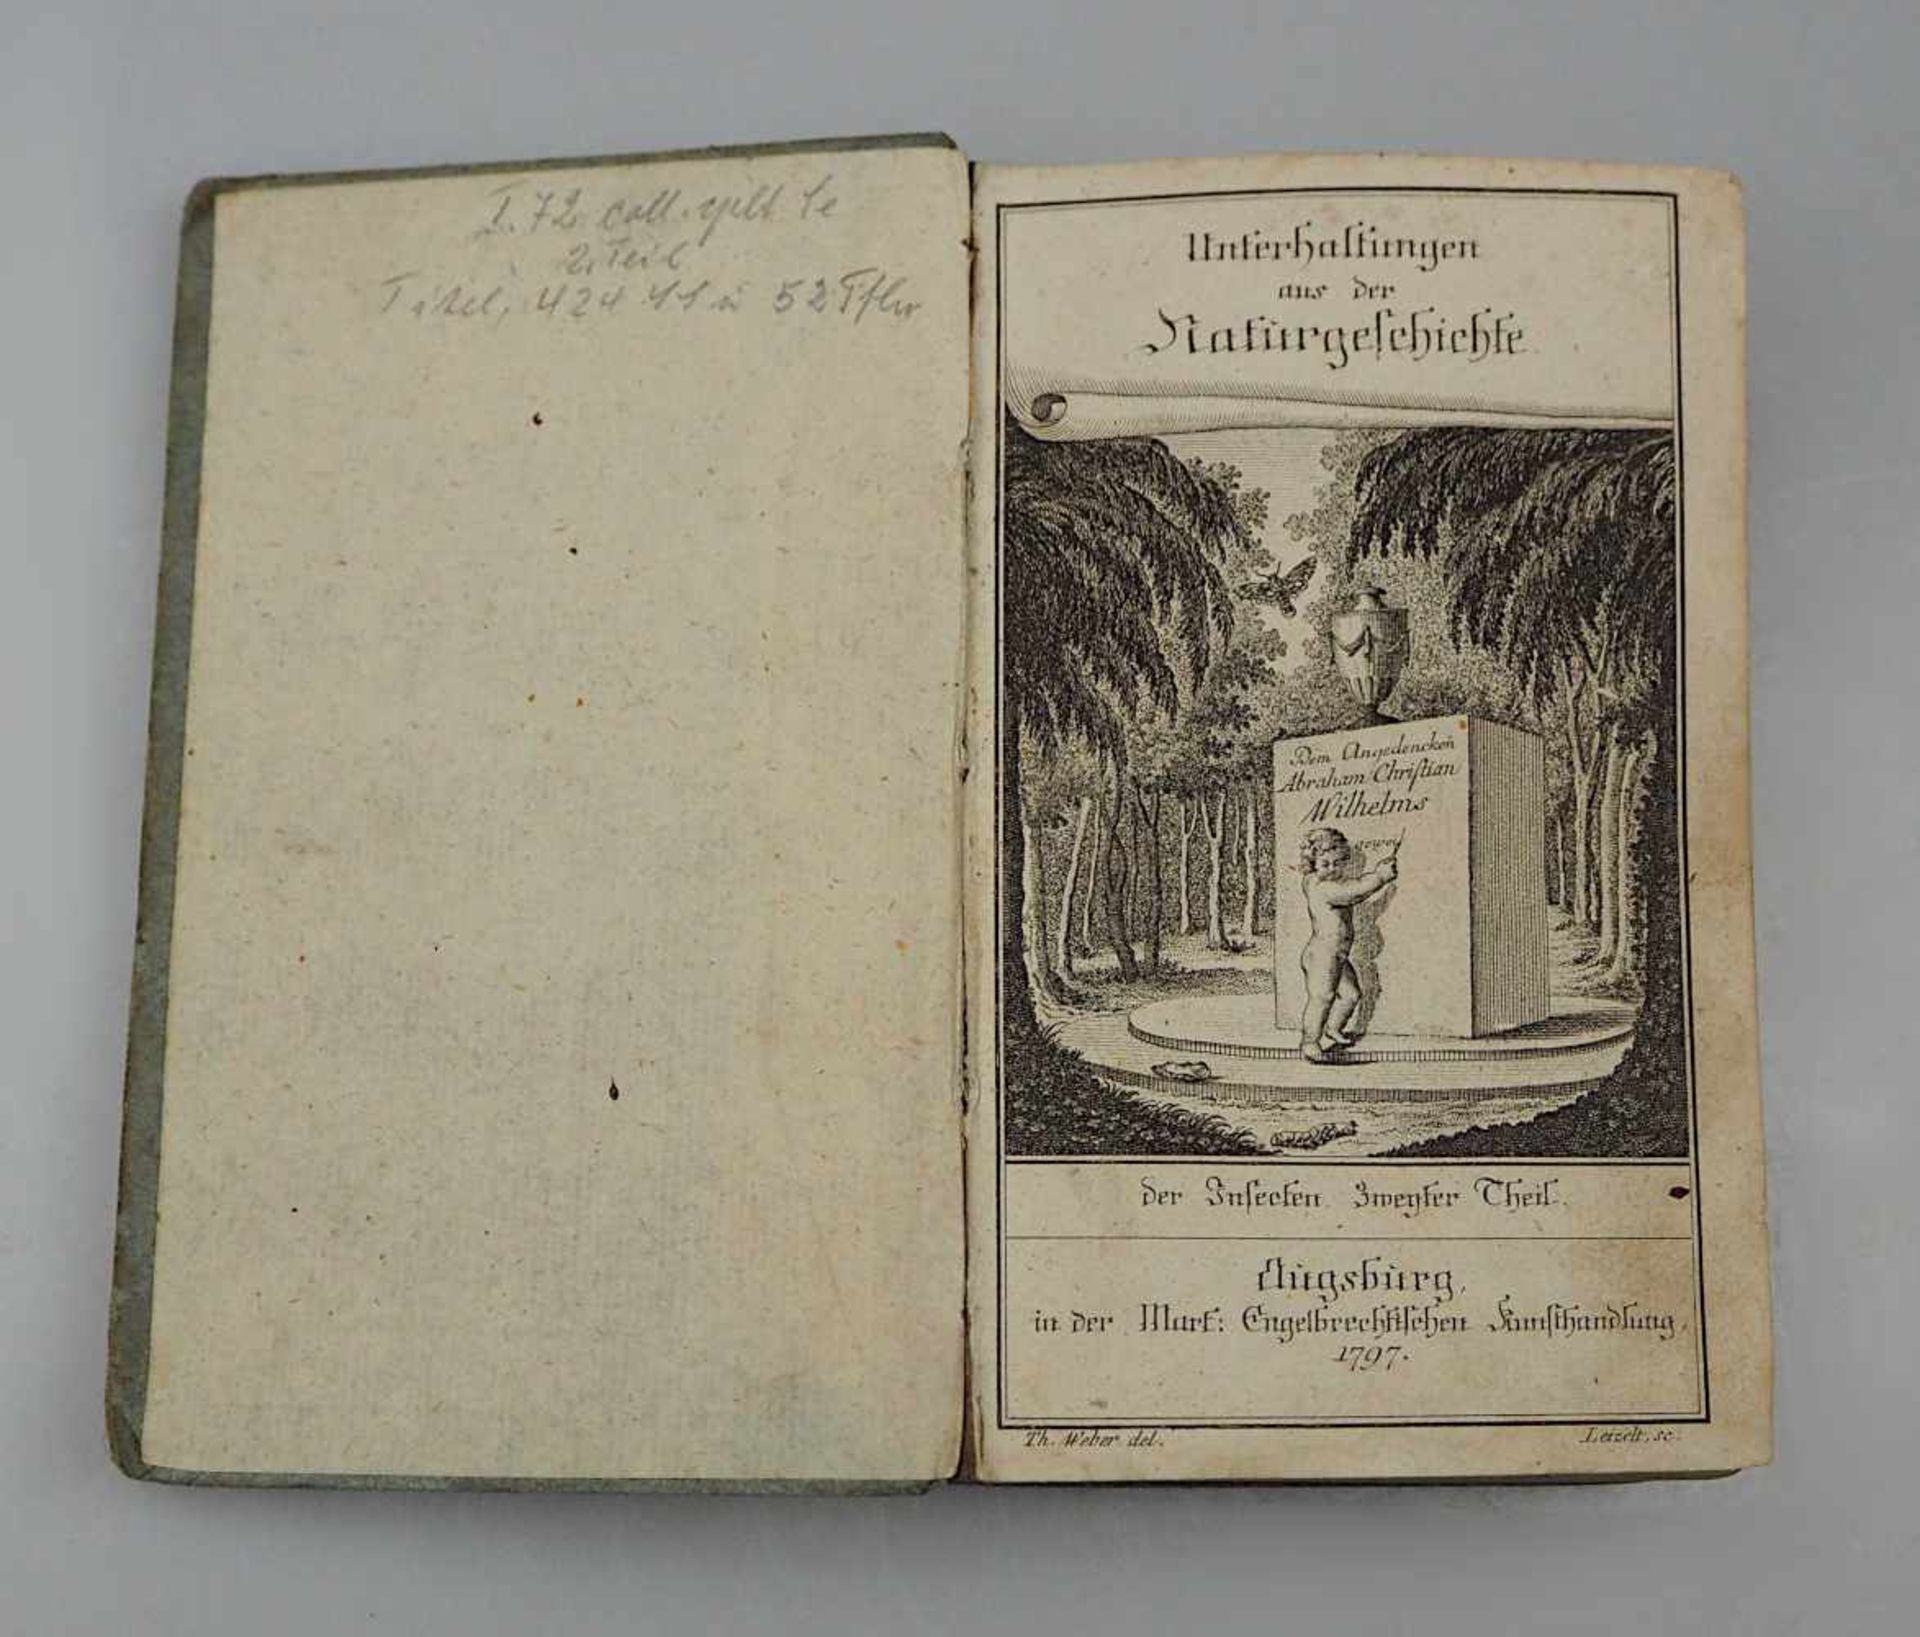 1 Buch "Unterhaltung aus der Naturgeschichte" Augsburg 1797 herausgegeben von der Mark Engelbrech - Bild 2 aus 3